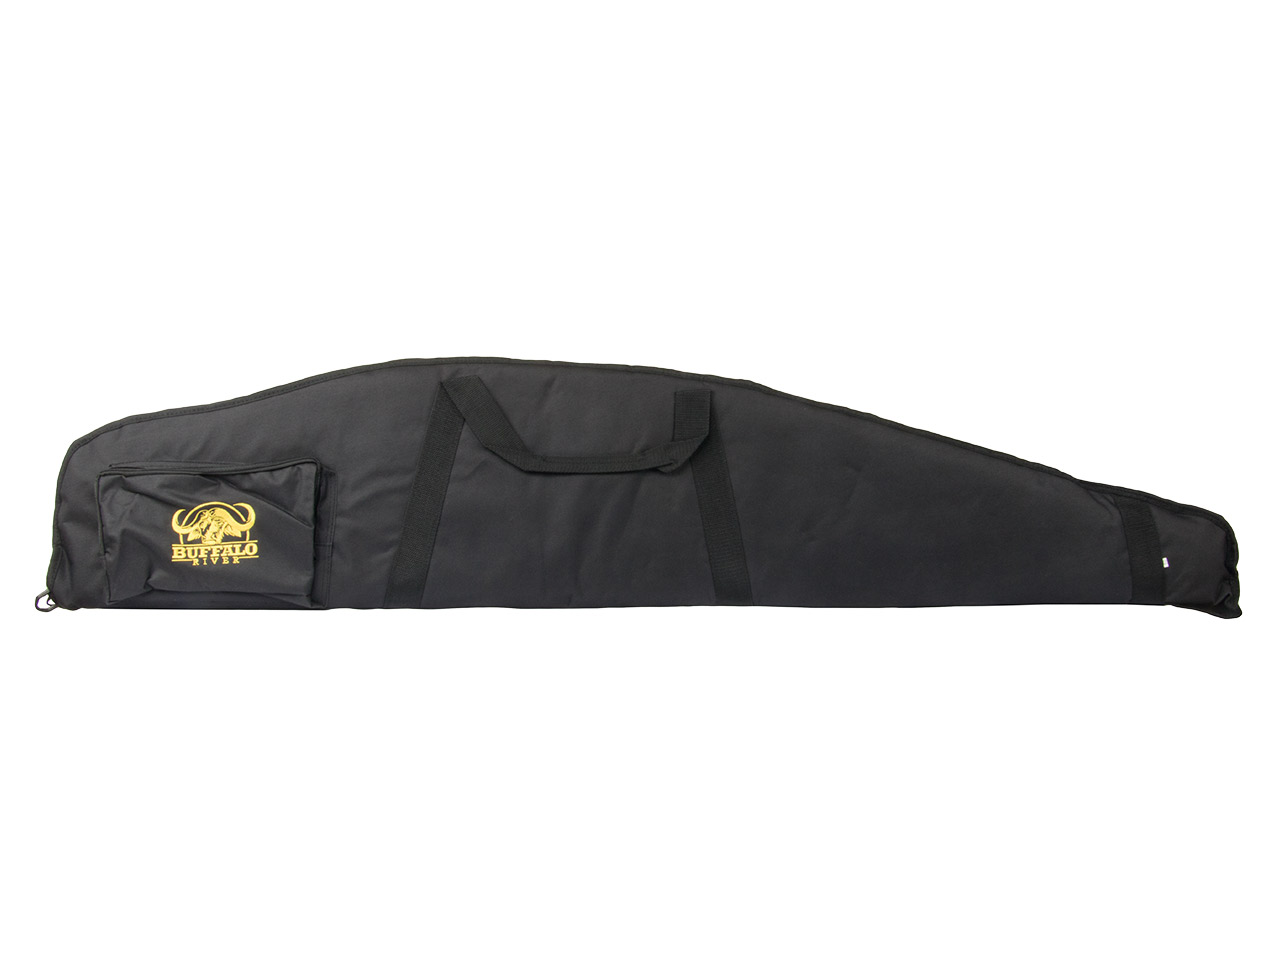 Gewehrfutteral Gewehrtasche Deluxe Bag Buffalo River 125 x 26 cm abschließbar Polyester Trageriemen Außentasche schwarz